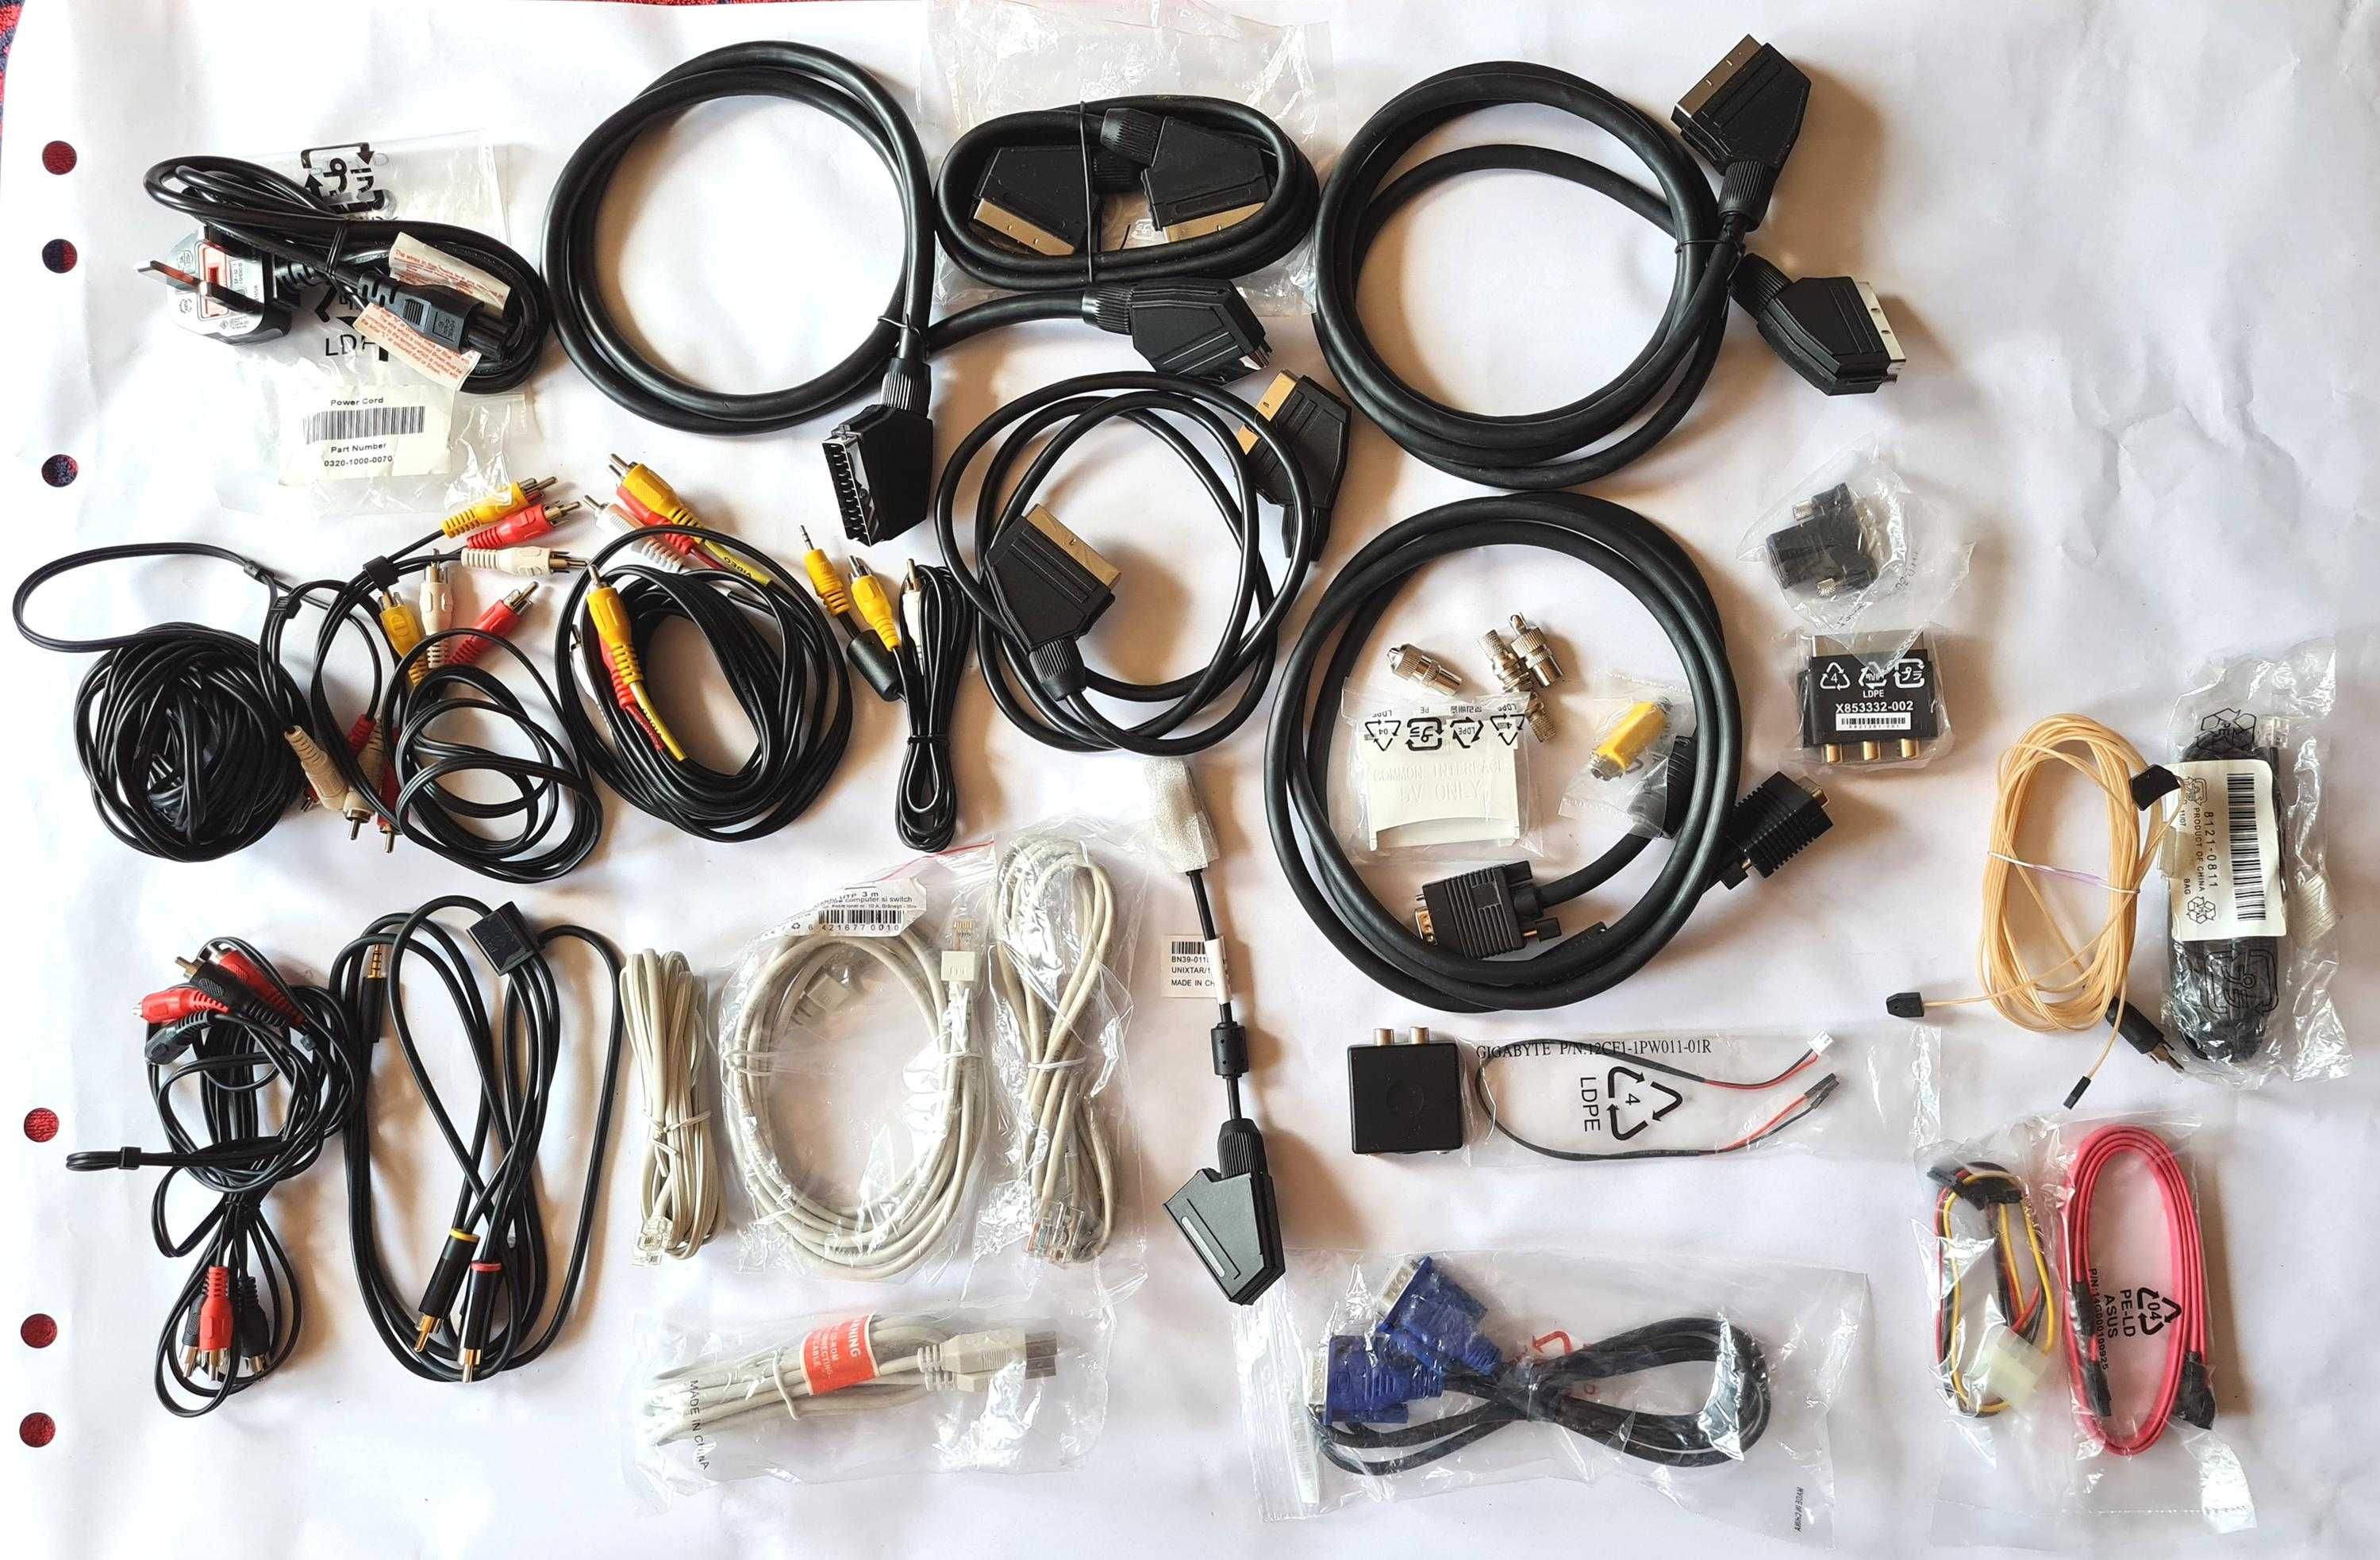 lot cabluri și diverse componente pentru PC, noi sau nefolosite